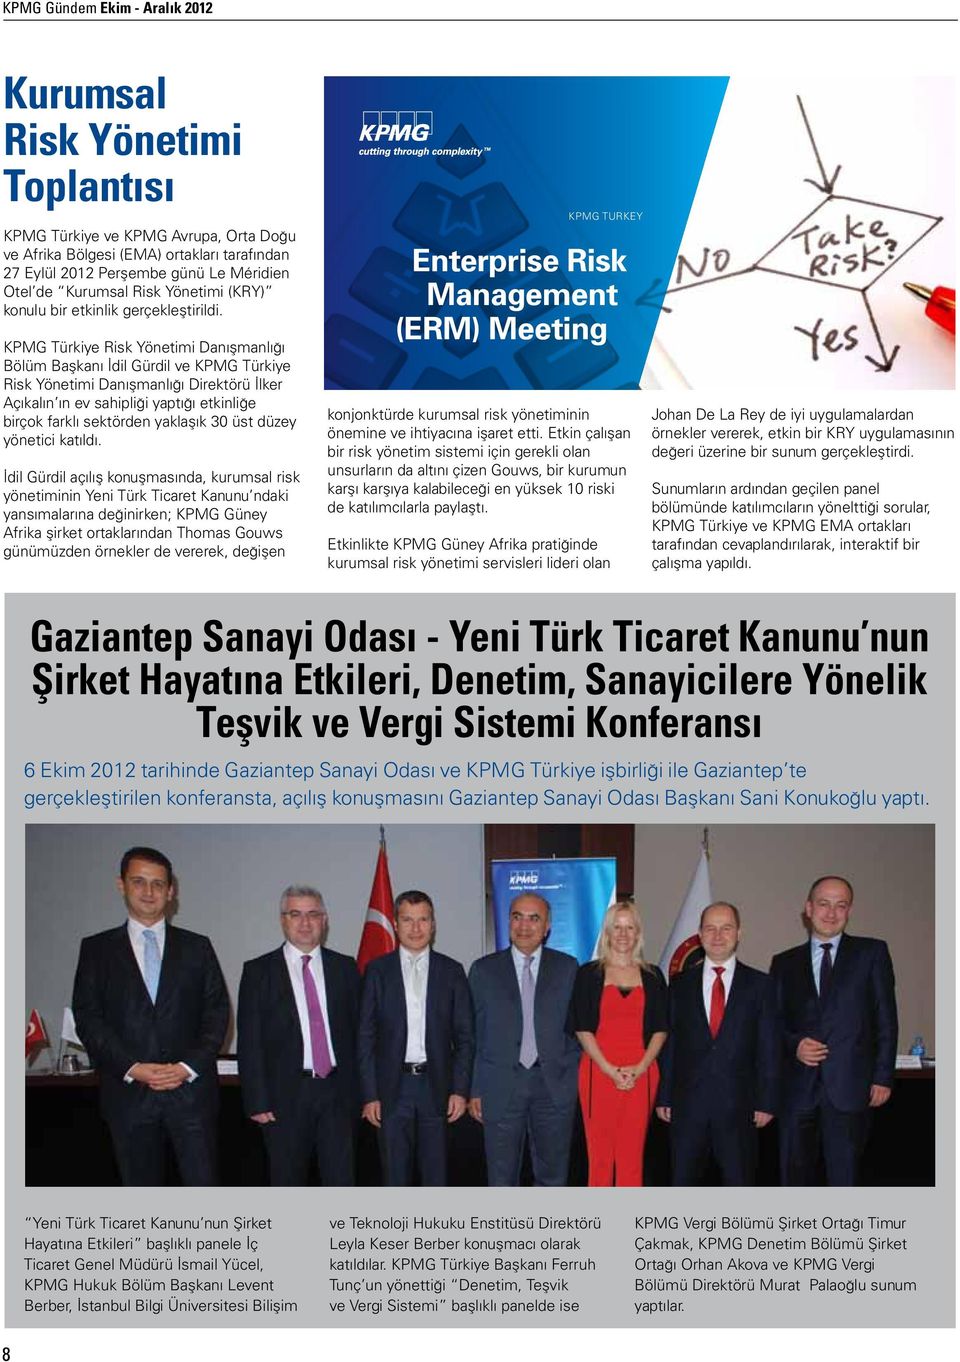 KPMG Türkiye Risk Yönetimi Danışmanlığı Bölüm Başkanı İdil Gürdil ve KPMG Türkiye Risk Yönetimi Danışmanlığı Direktörü İlker Açıkalın ın ev sahipliği yaptığı etkinliğe birçok farklı sektörden